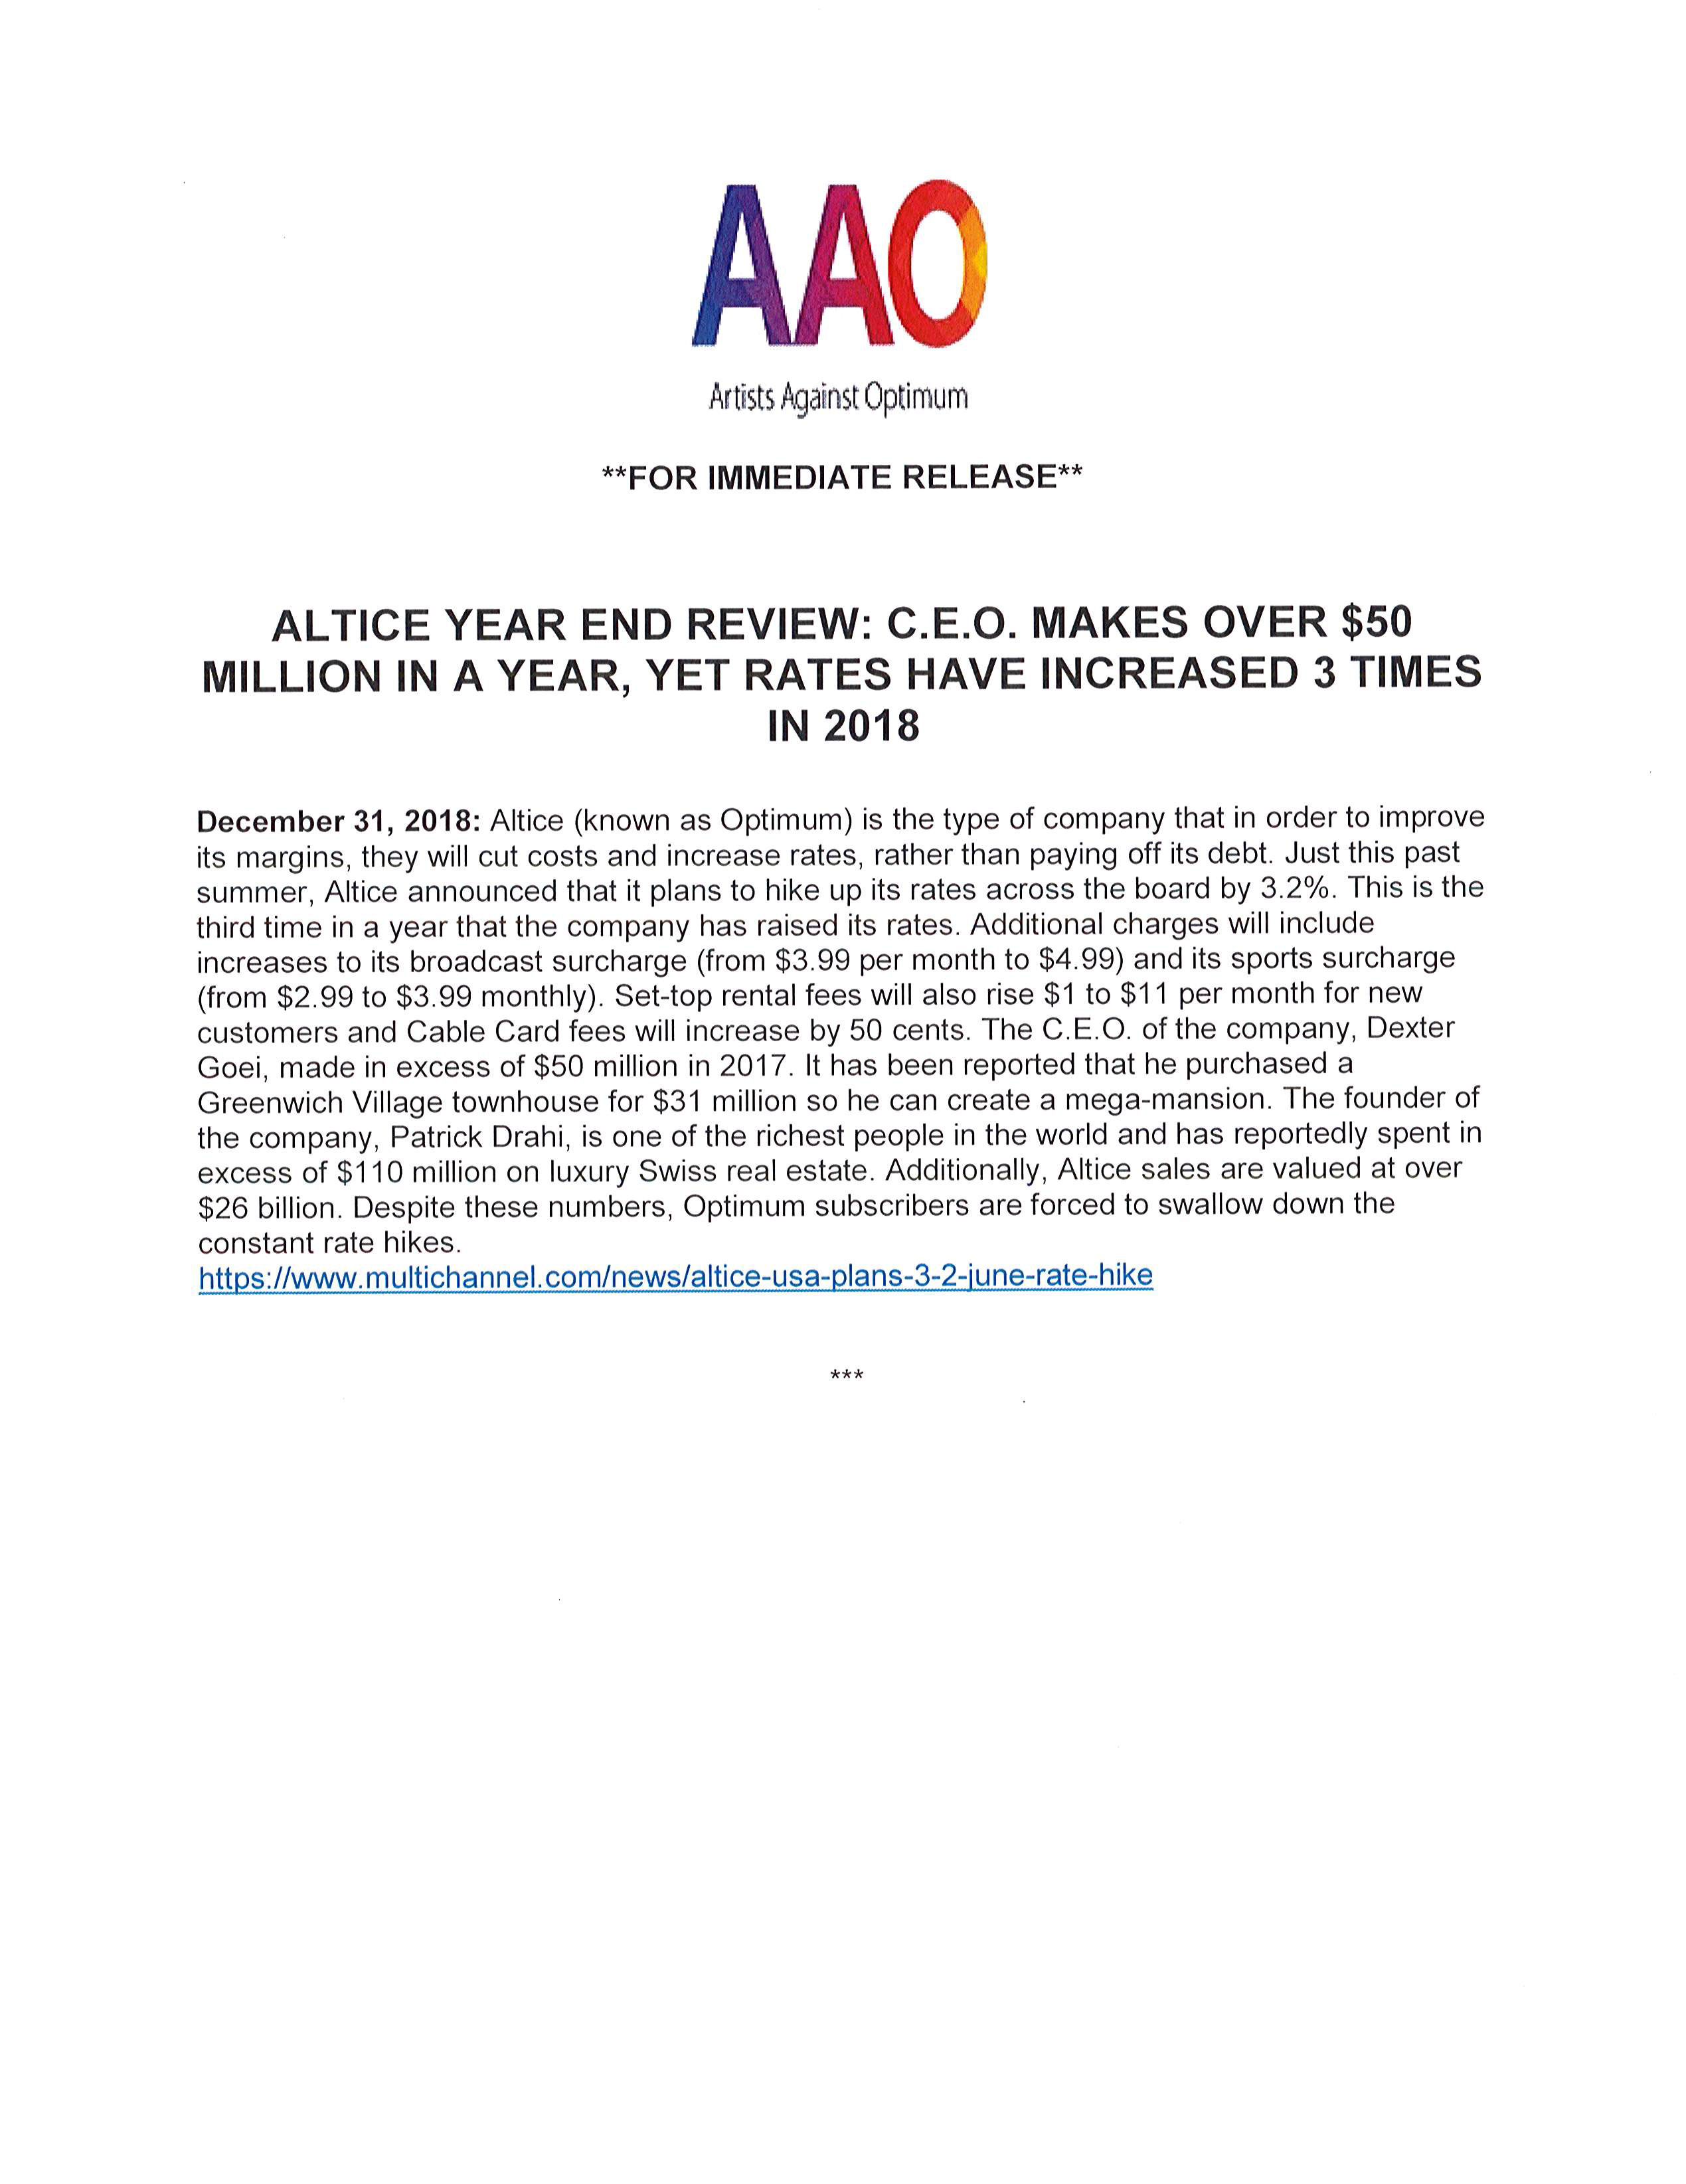 AAO-Press-Release-12.31.18